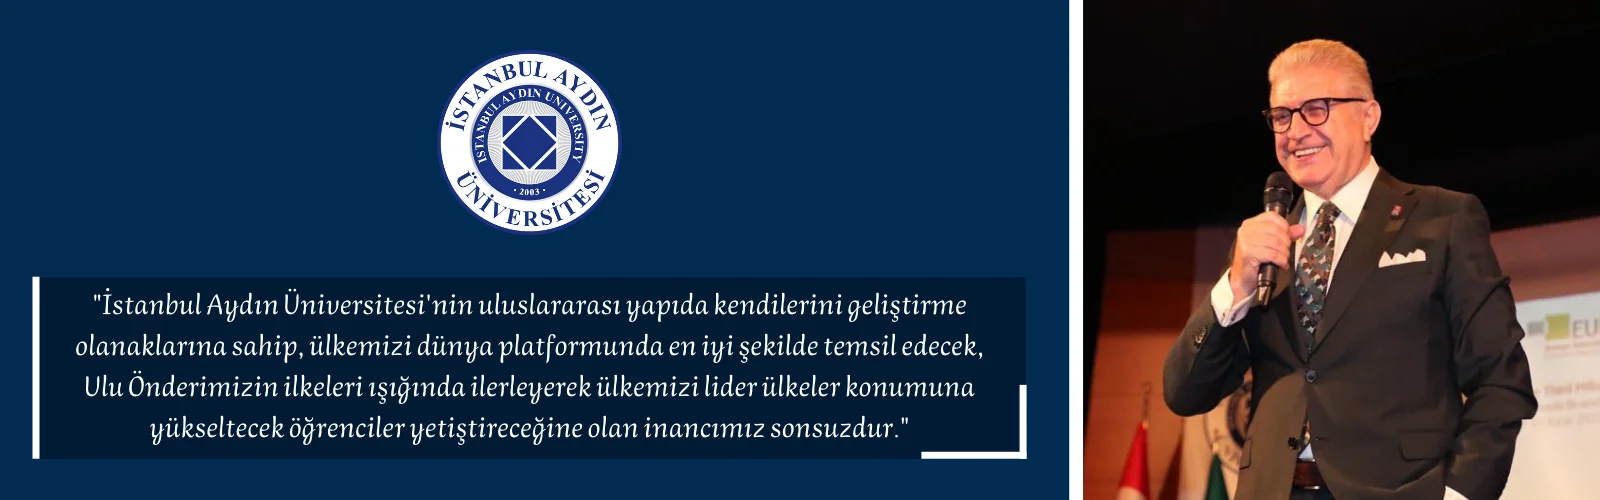 İstanbul Aydın Üniversitesinin Değerli Öğrencileri; Biz Yine Buradayız… Manşet